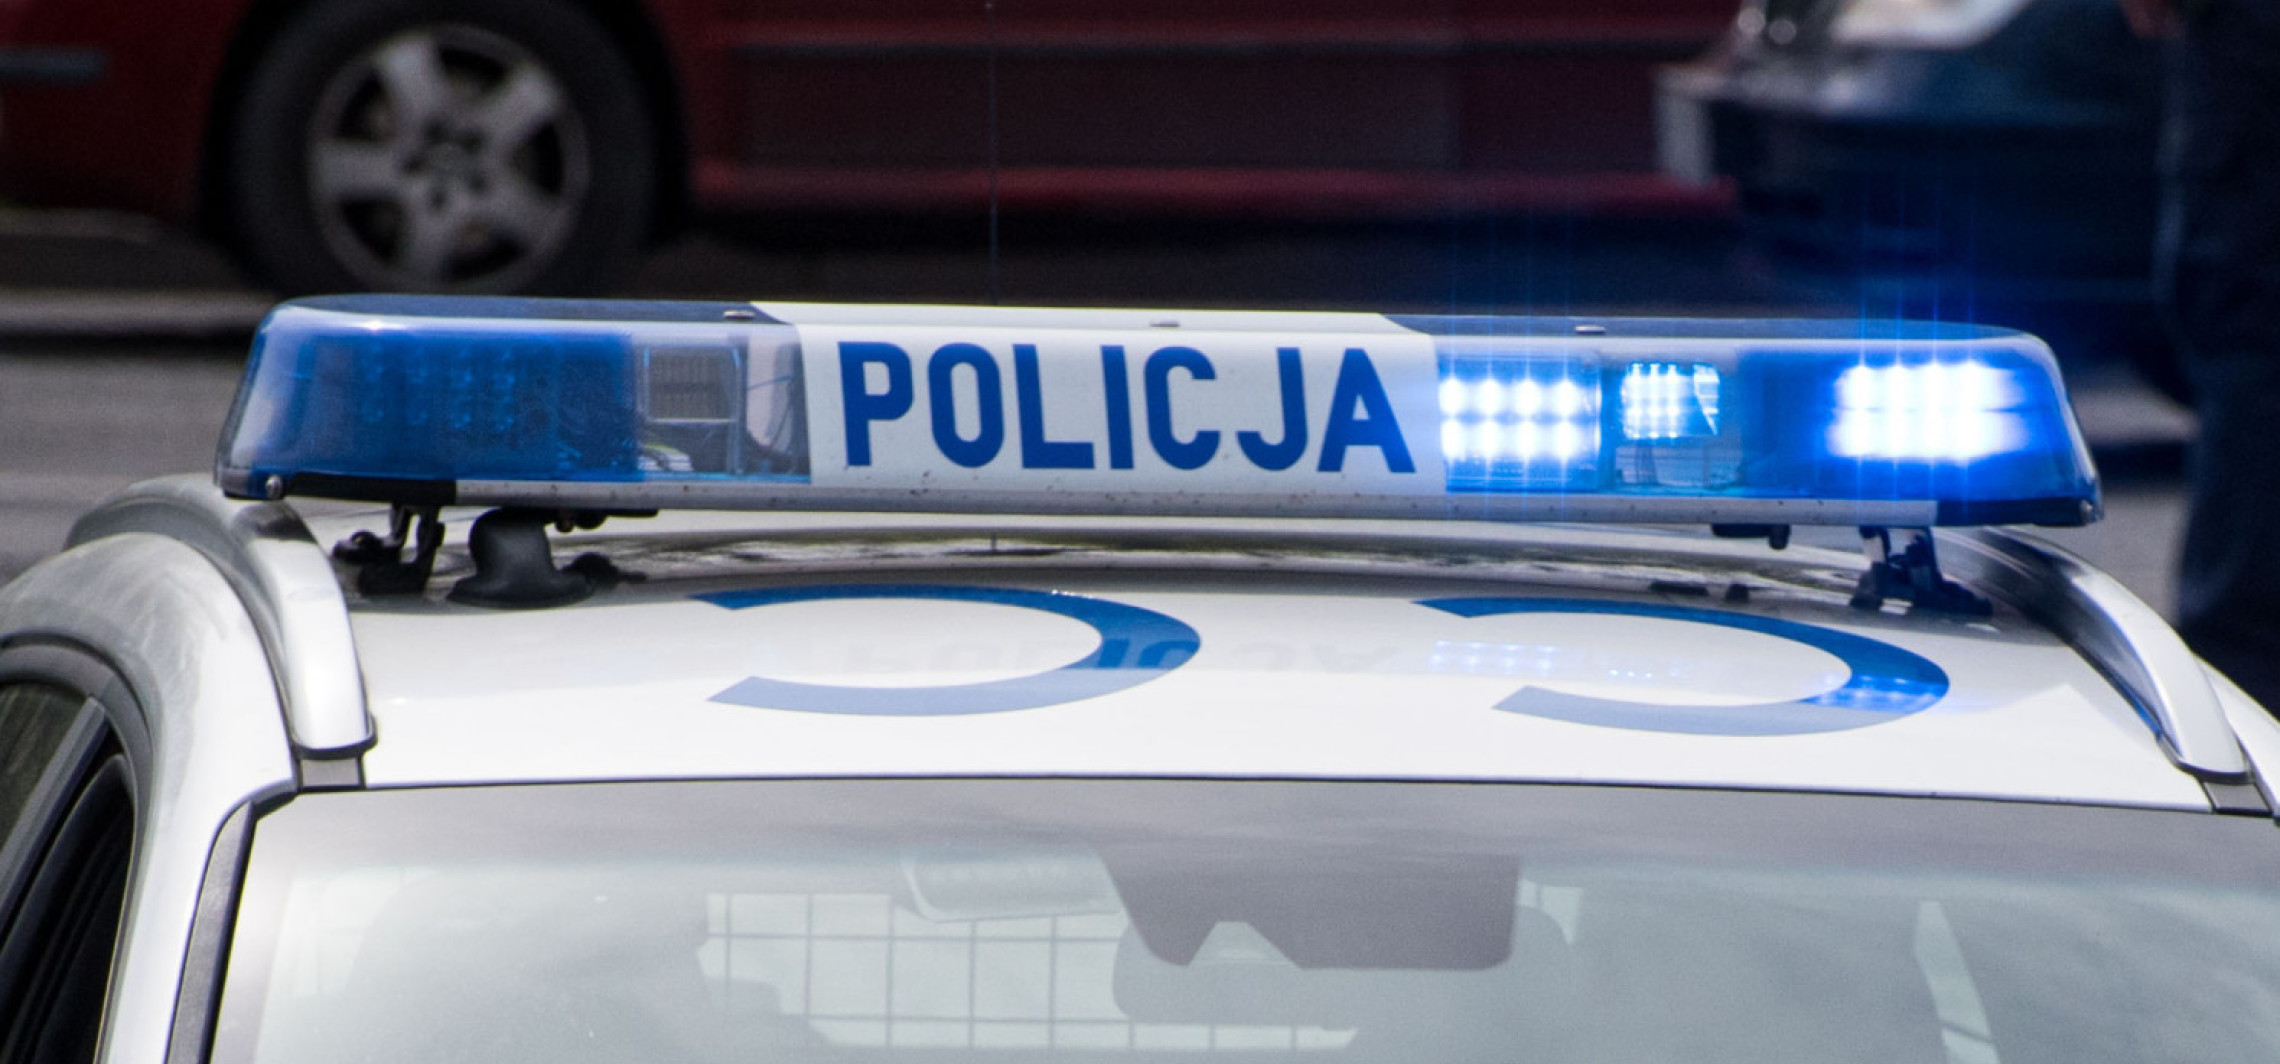 Inowrocław - Ford potrącił kobietę. Policja szuka świadków